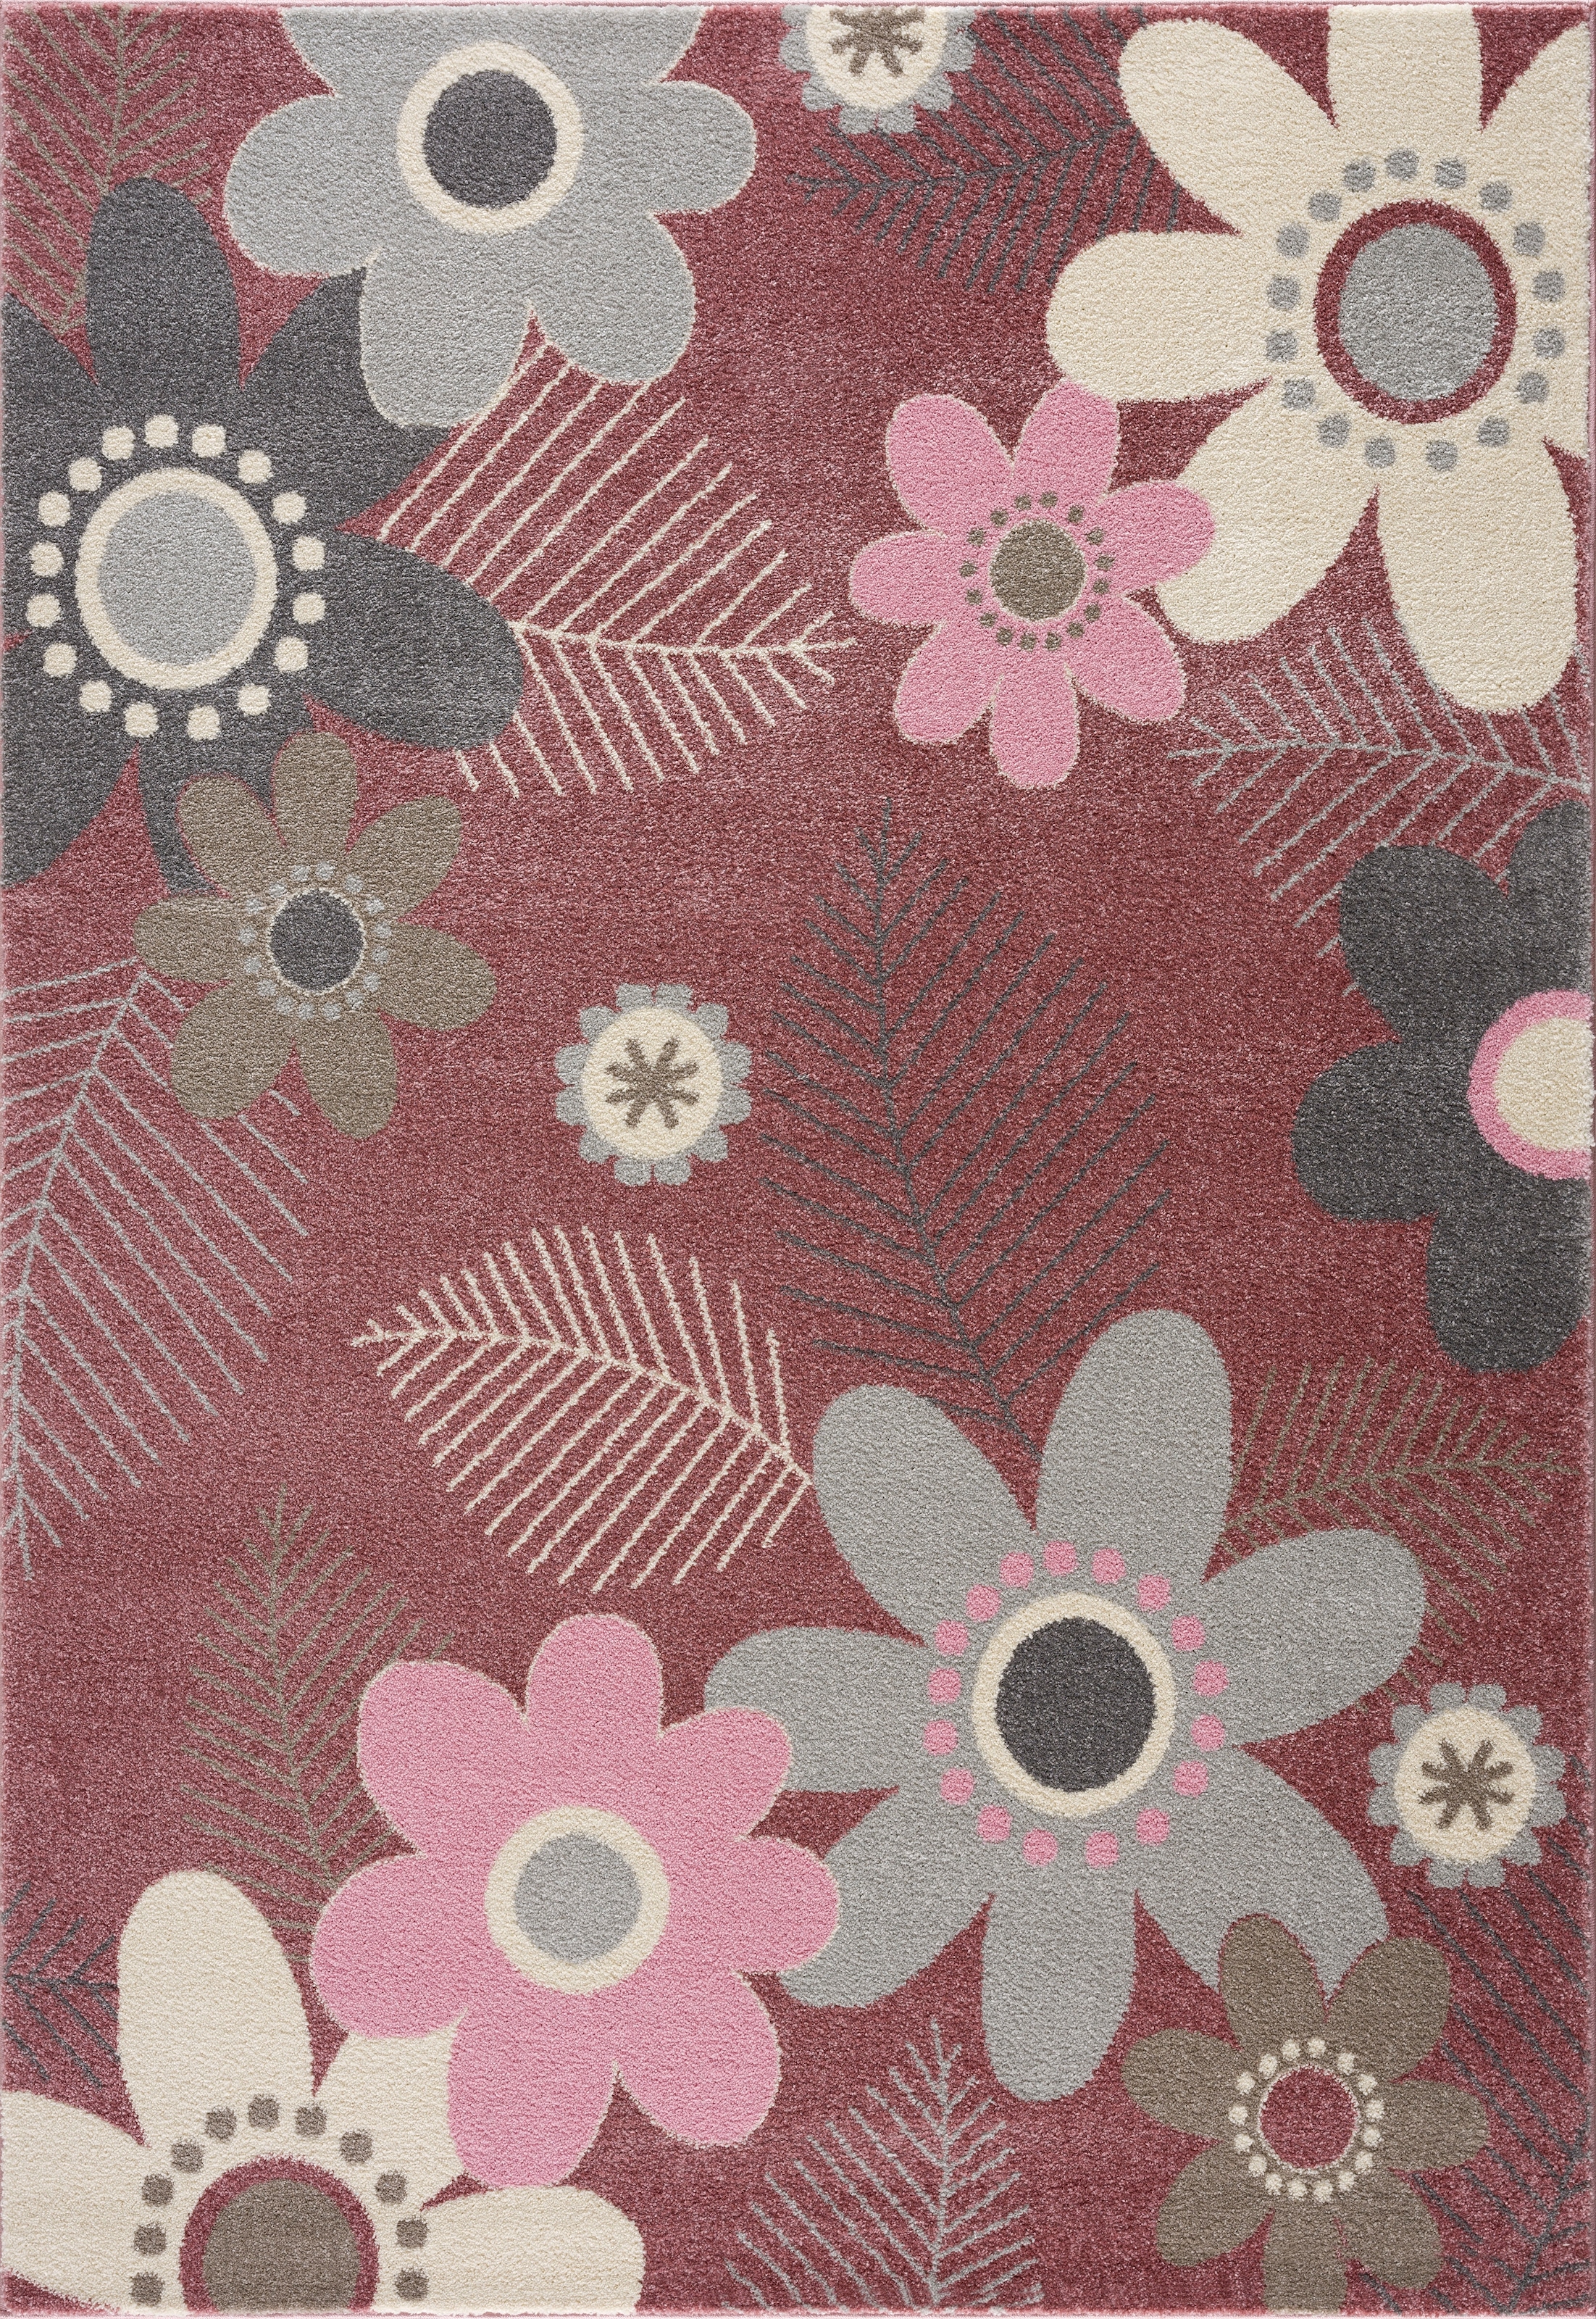 Kinderteppich Blumen, »Johanna«, ideale Wende-Teppiche rechteckig, mit Design Kinderzimmer fürs Lüttenhütt